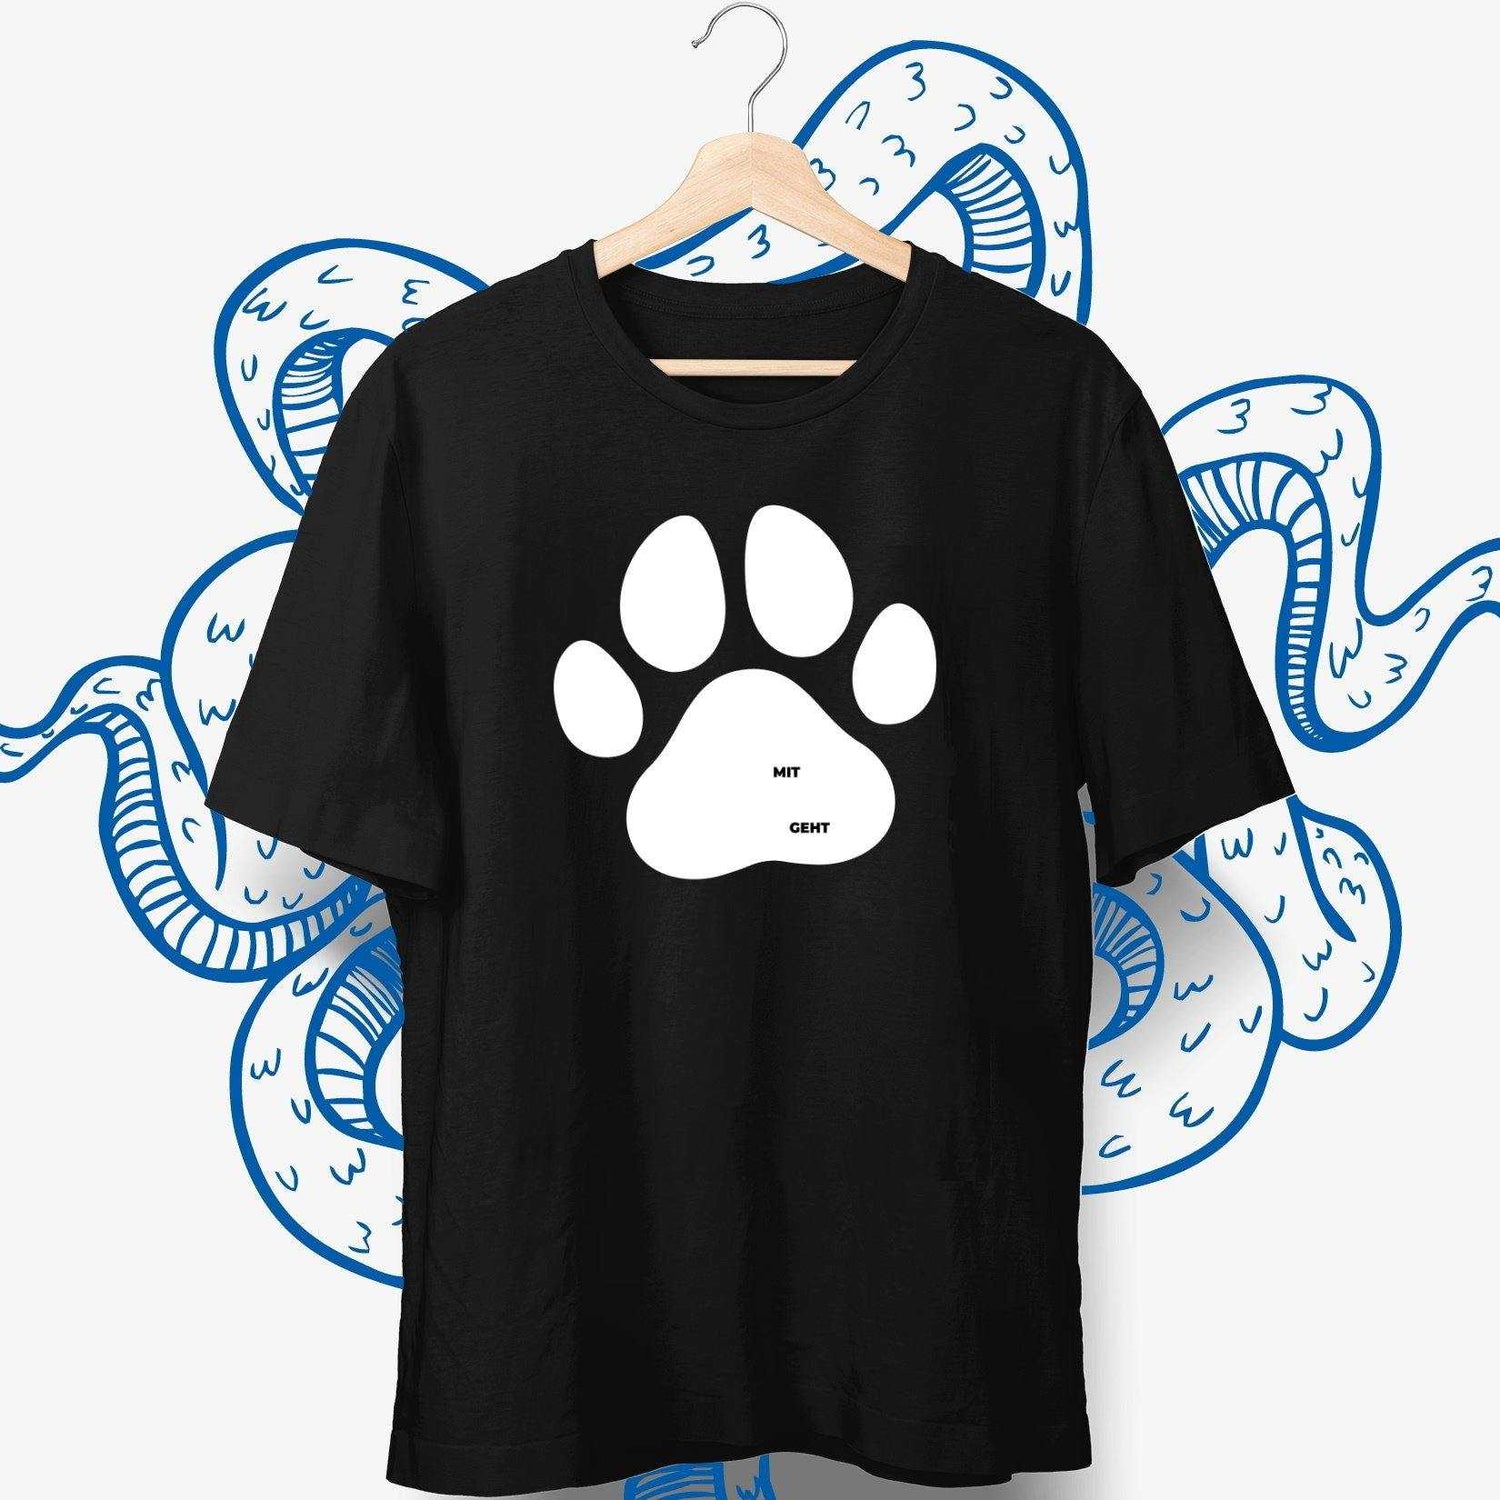 Mit dem Hund geht   - personalisierbares Hunde T-Shirt